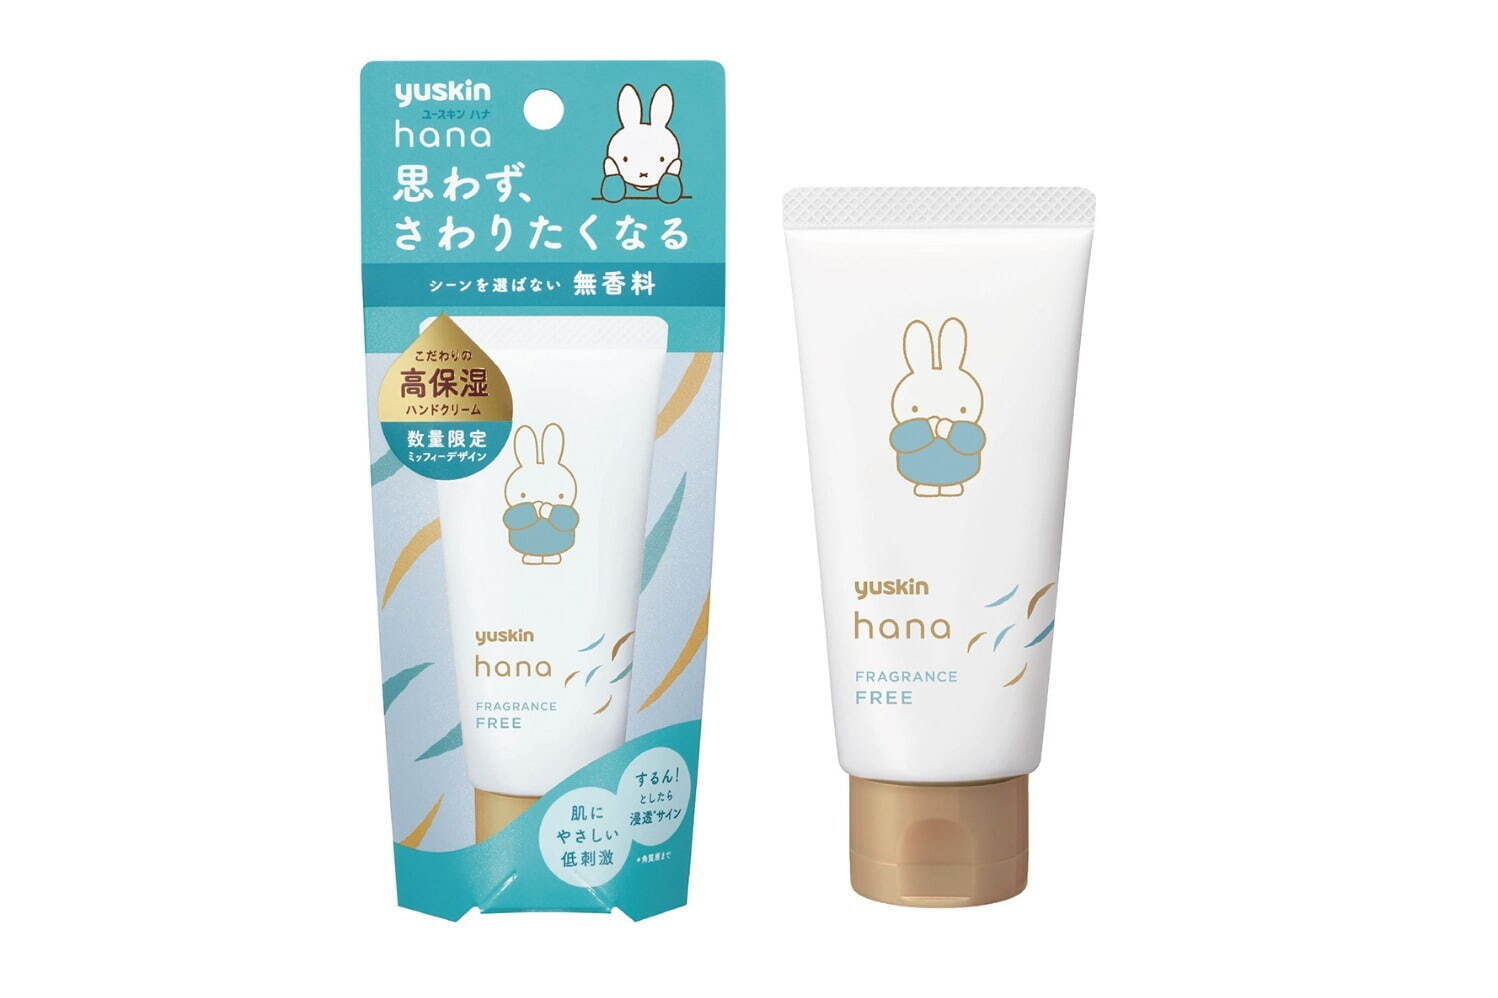 ユースキンhana ハンドクリーム ミッフィーデザイン 50g 無香料 770円